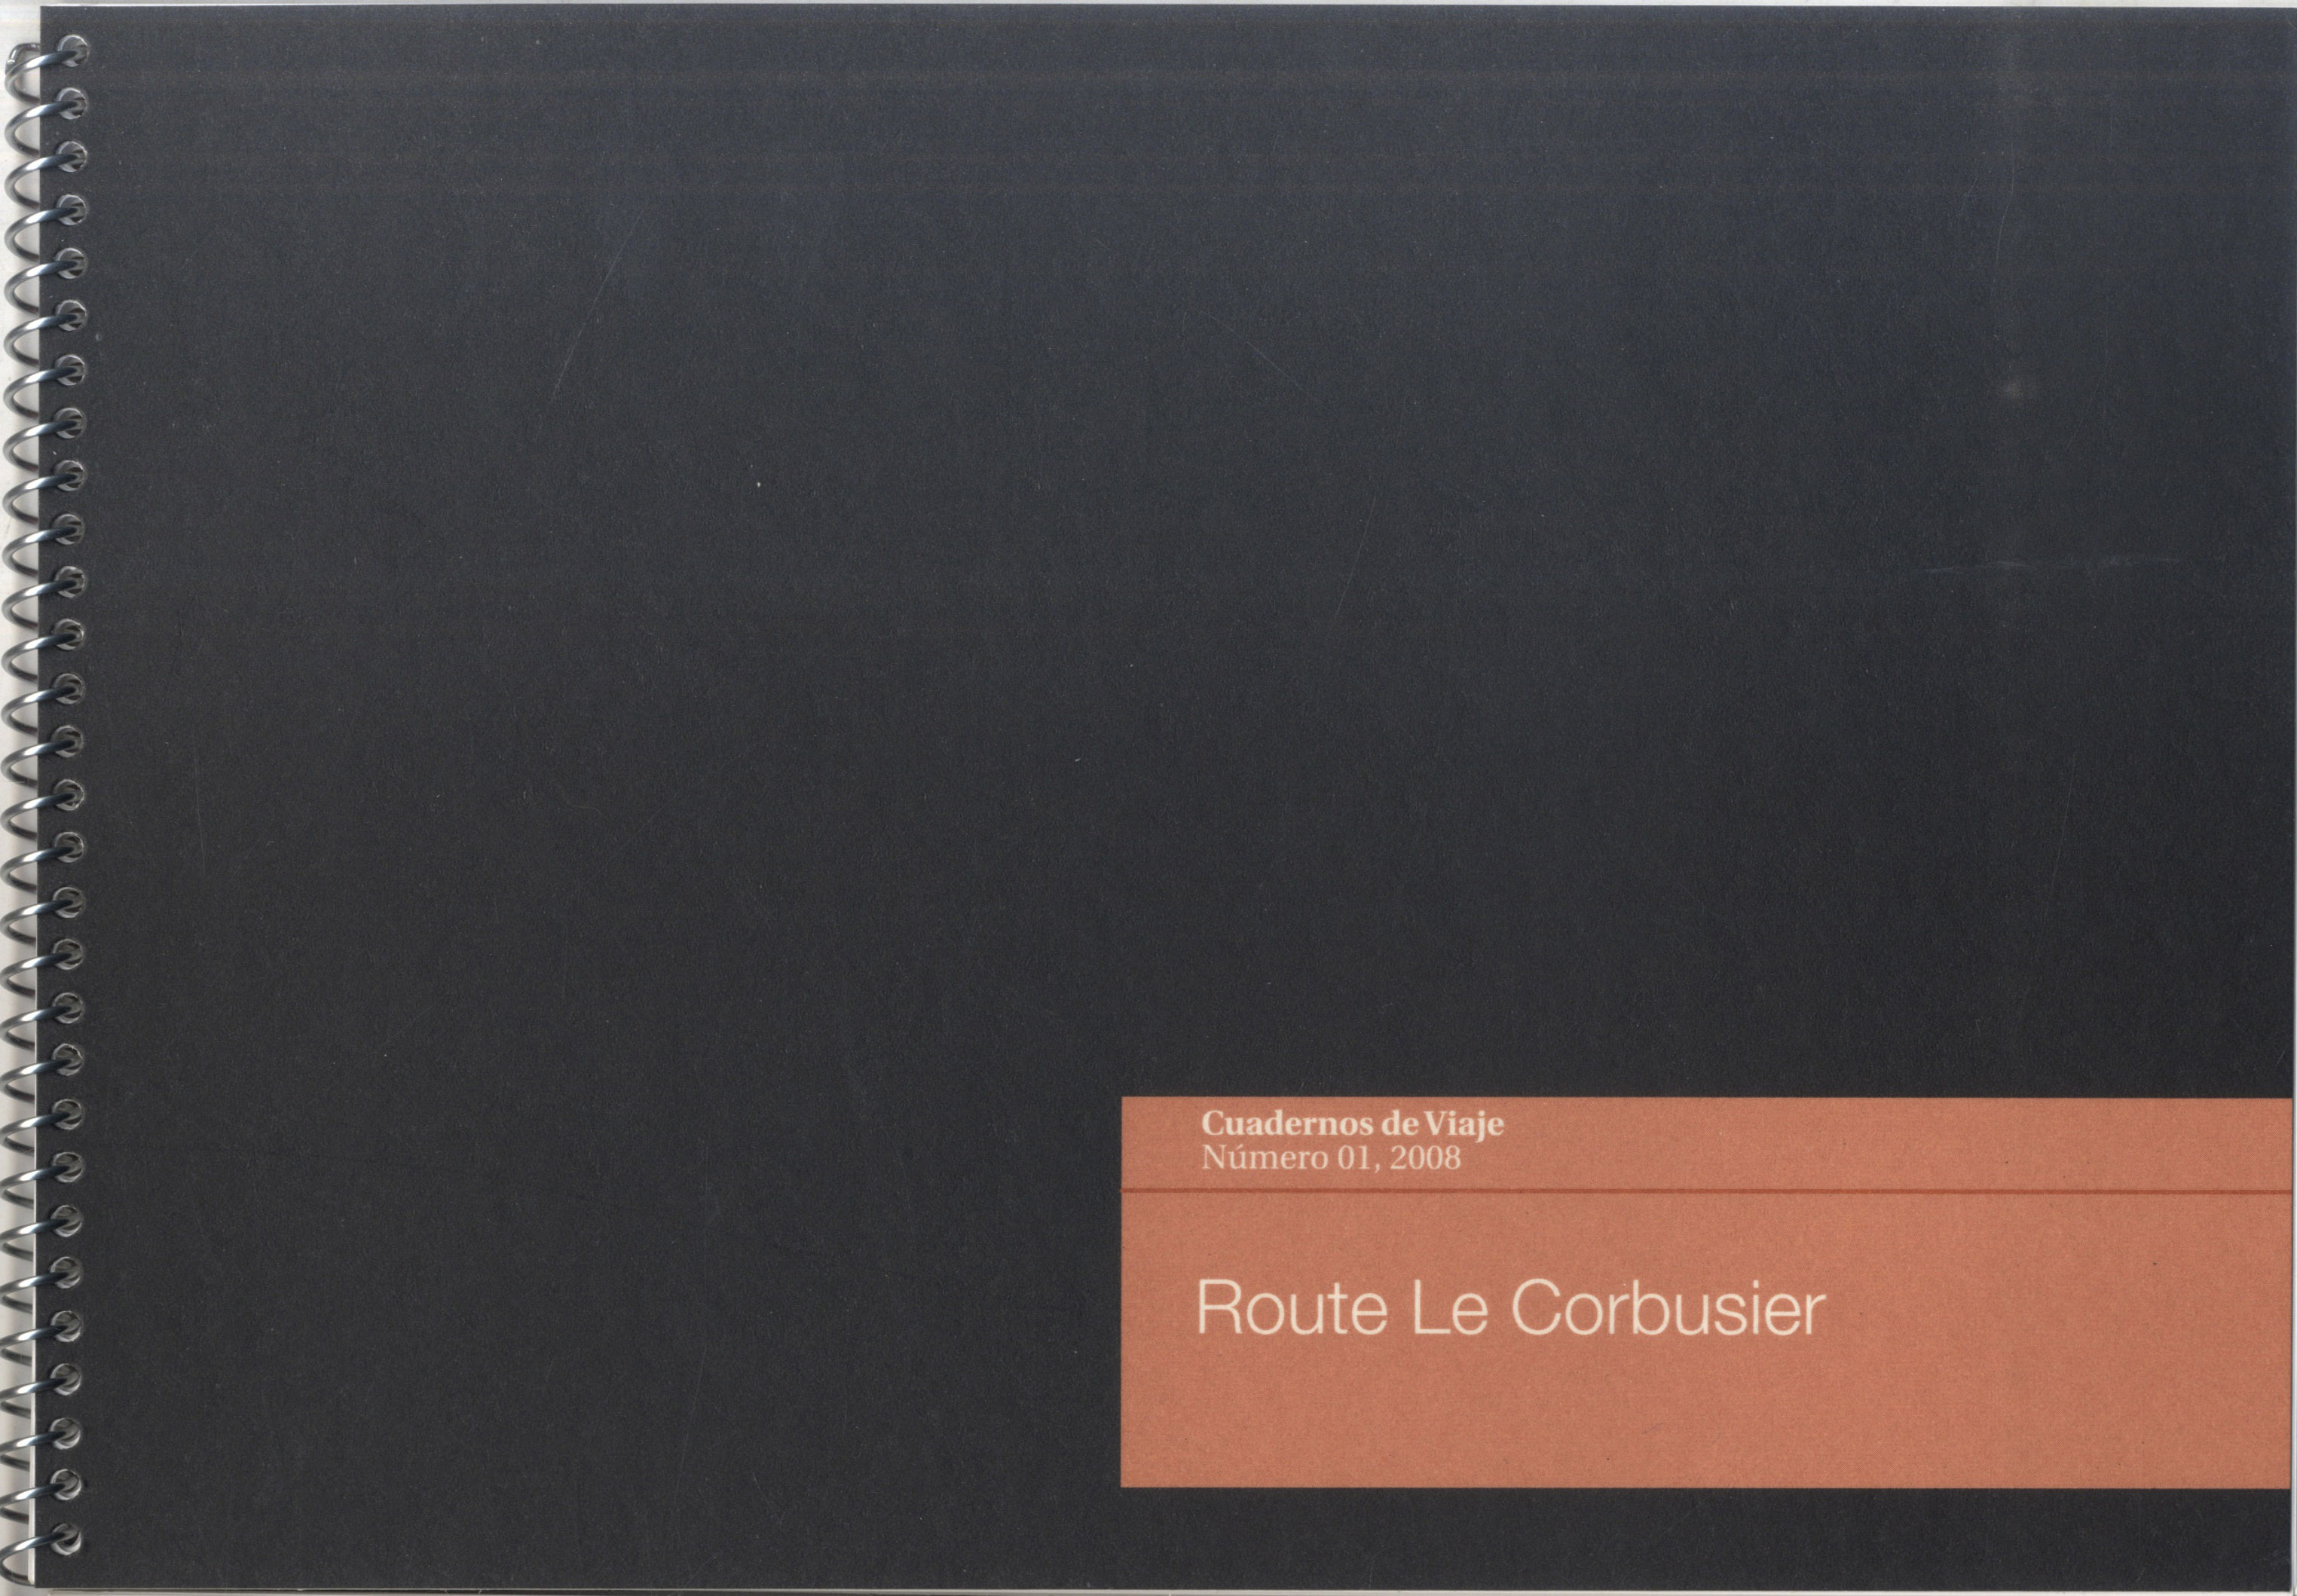 Cuadernos de viaje. Route Le Corbusier.